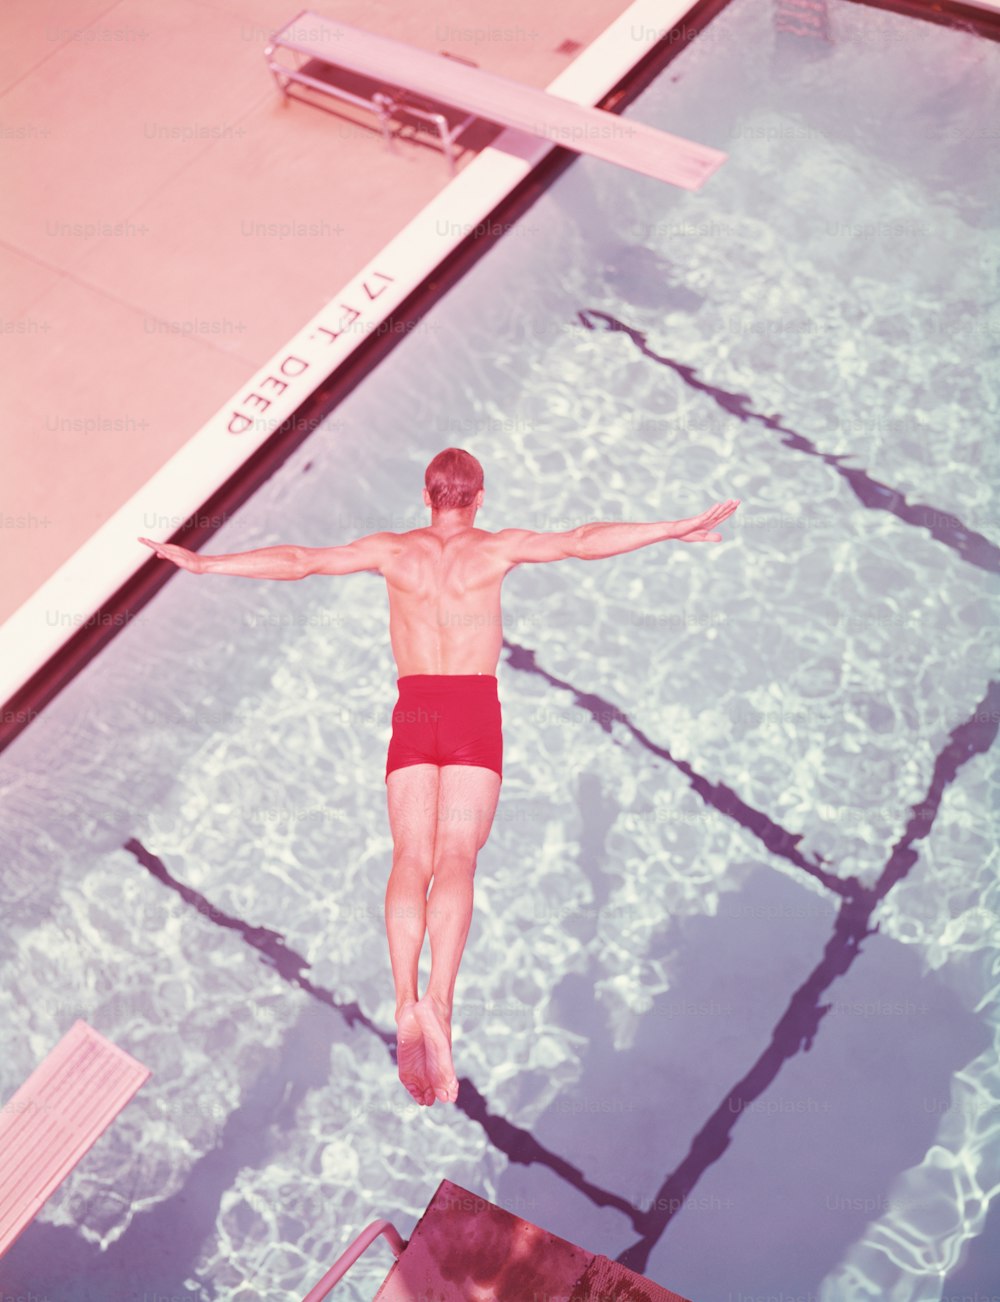 ÉTATS-UNIS - Circa 1950s : Homme plongeant dans la piscine, vue aérienne.